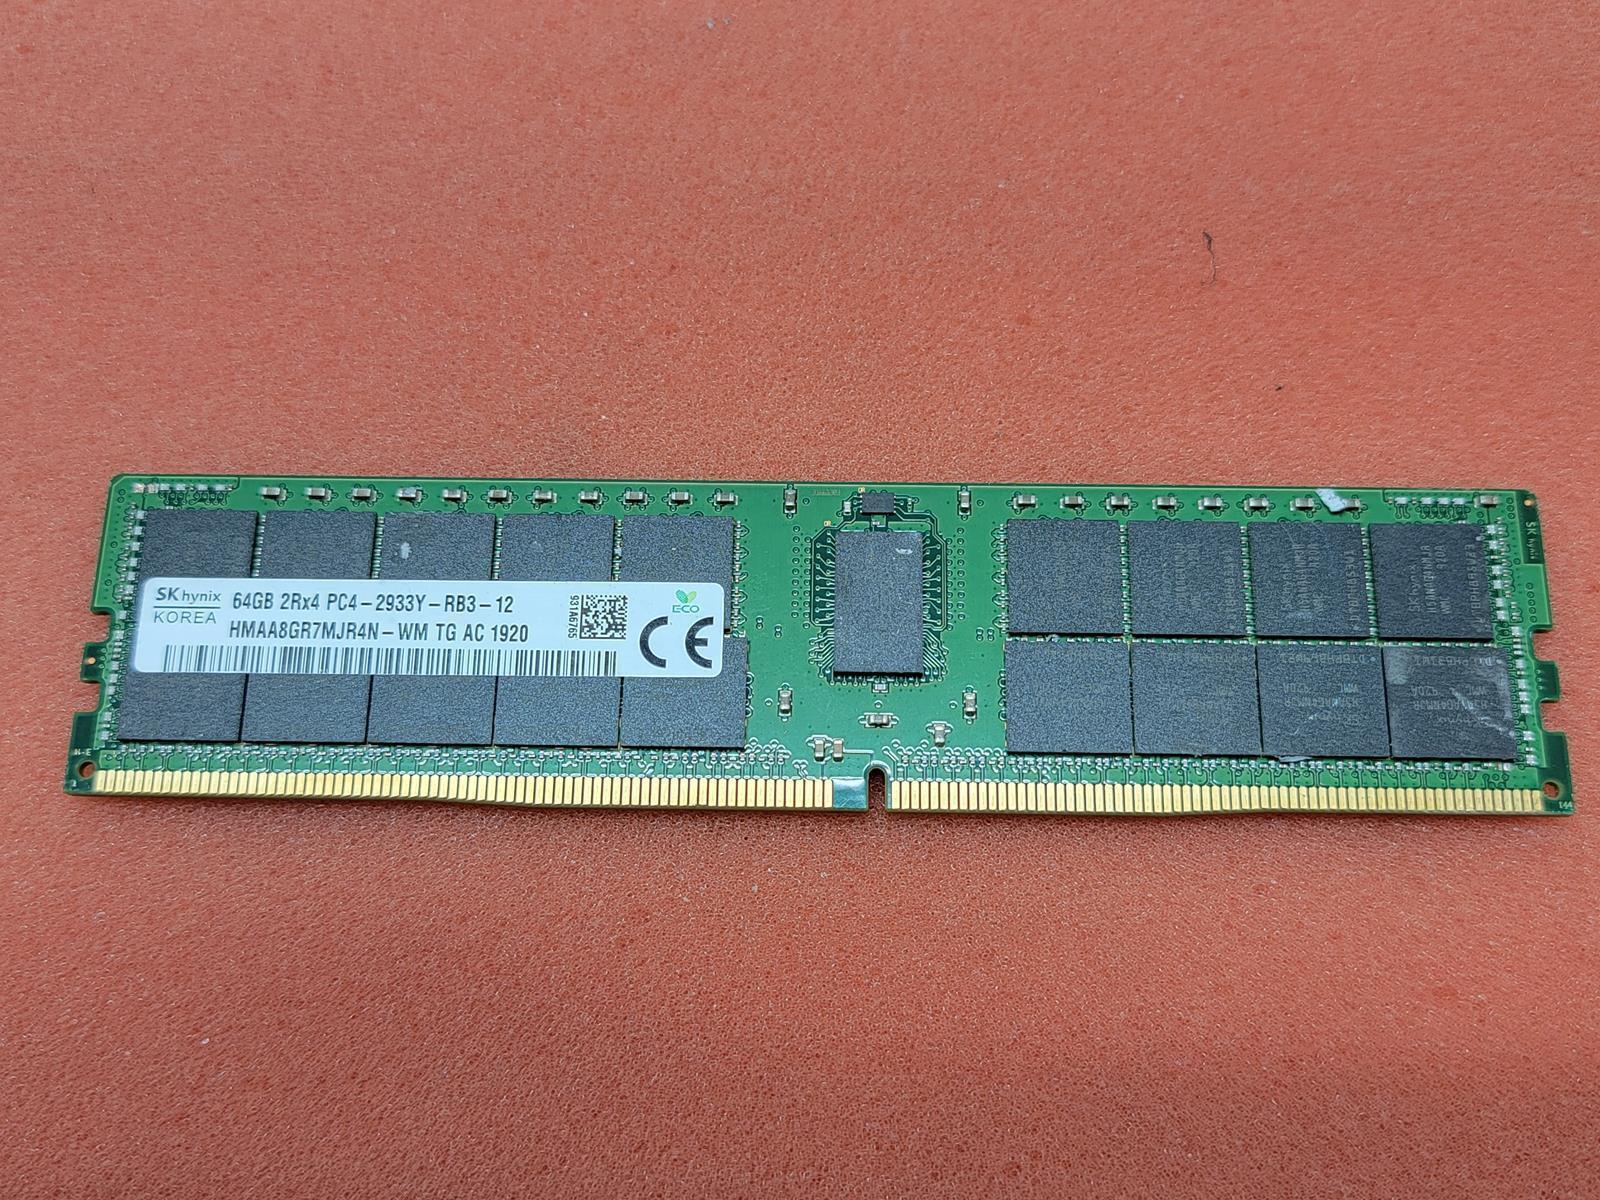 SK HYNIX 64GB 2933Y 2Rx4 RECC DDR4 SERVER RAM HMAA8GR7MJR4N-WM SKU 4909